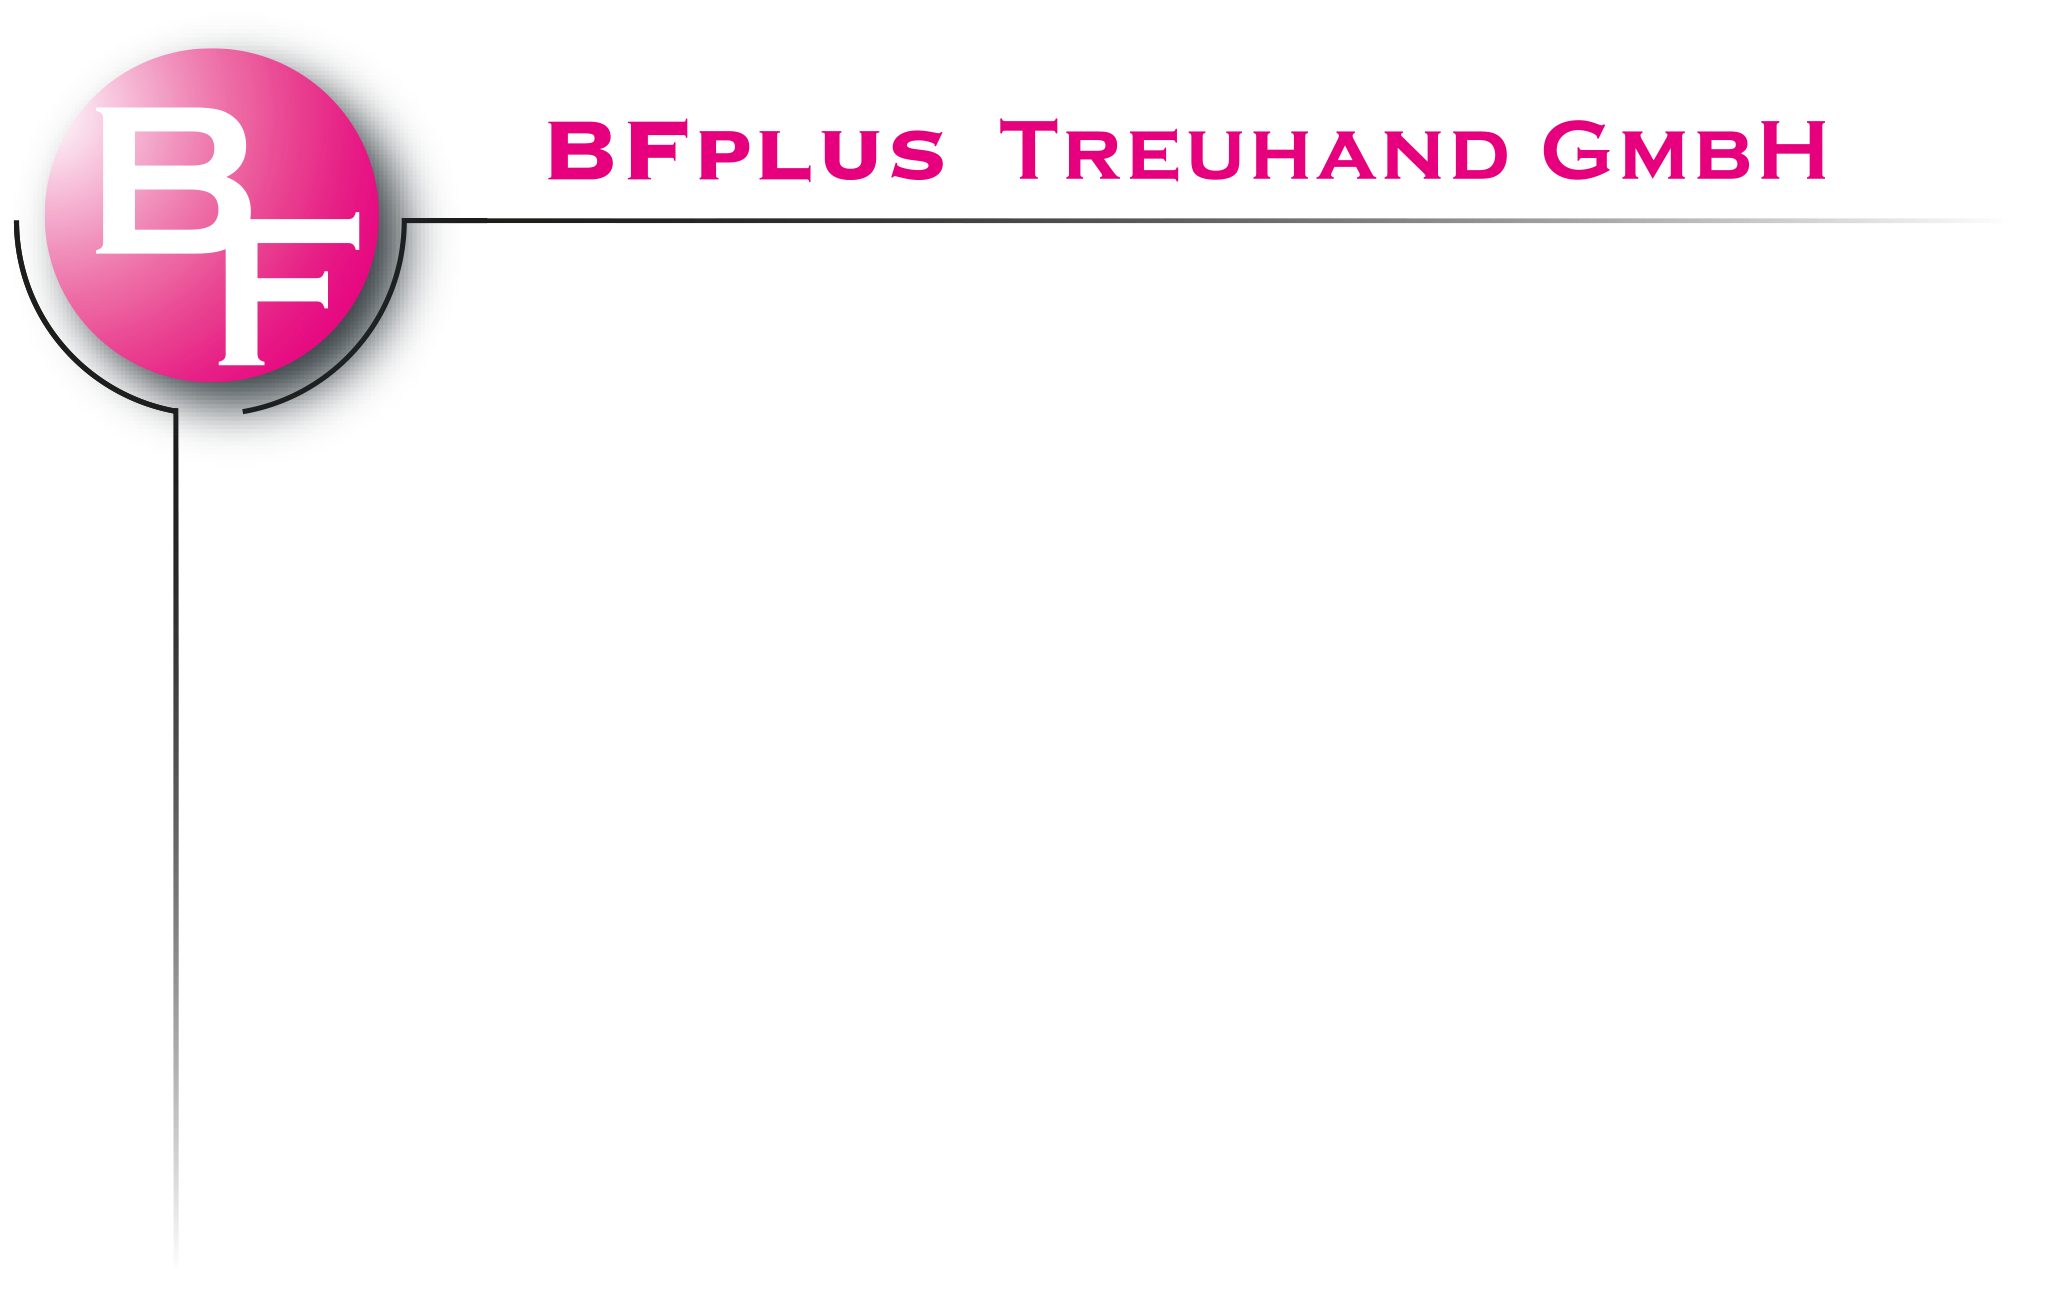 BFplus Treuhand